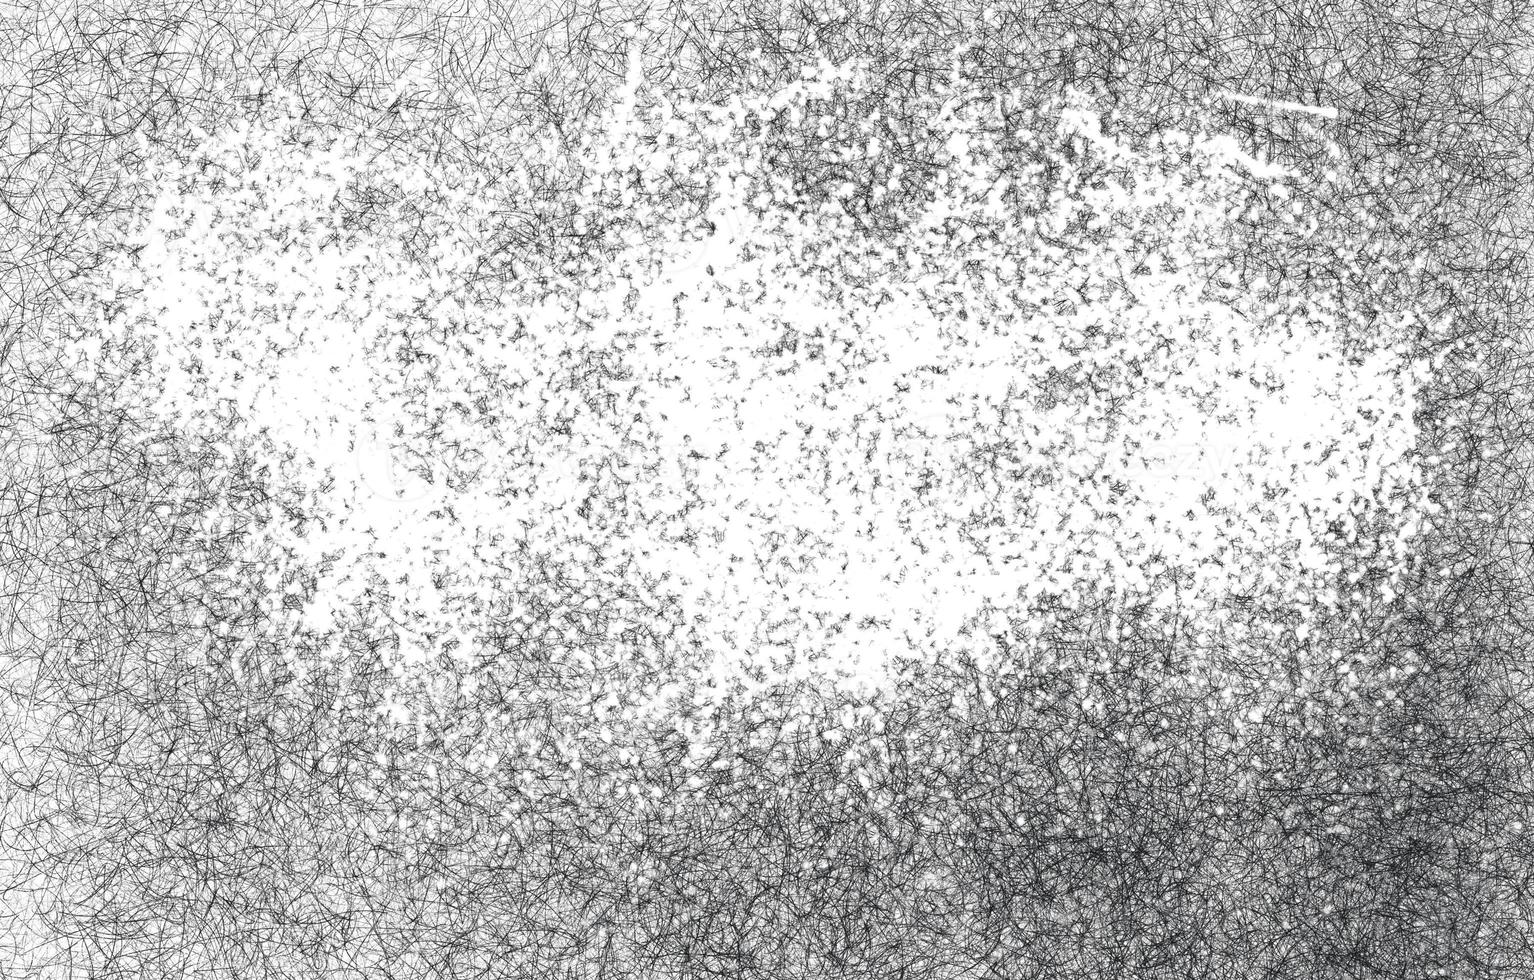 grunge en blanco y negro. textura de superposición de angustia. polvo superficial abstracto y concepto de fondo de pared sucia áspera. fondo granulado abstracto, pared pintada vieja. foto